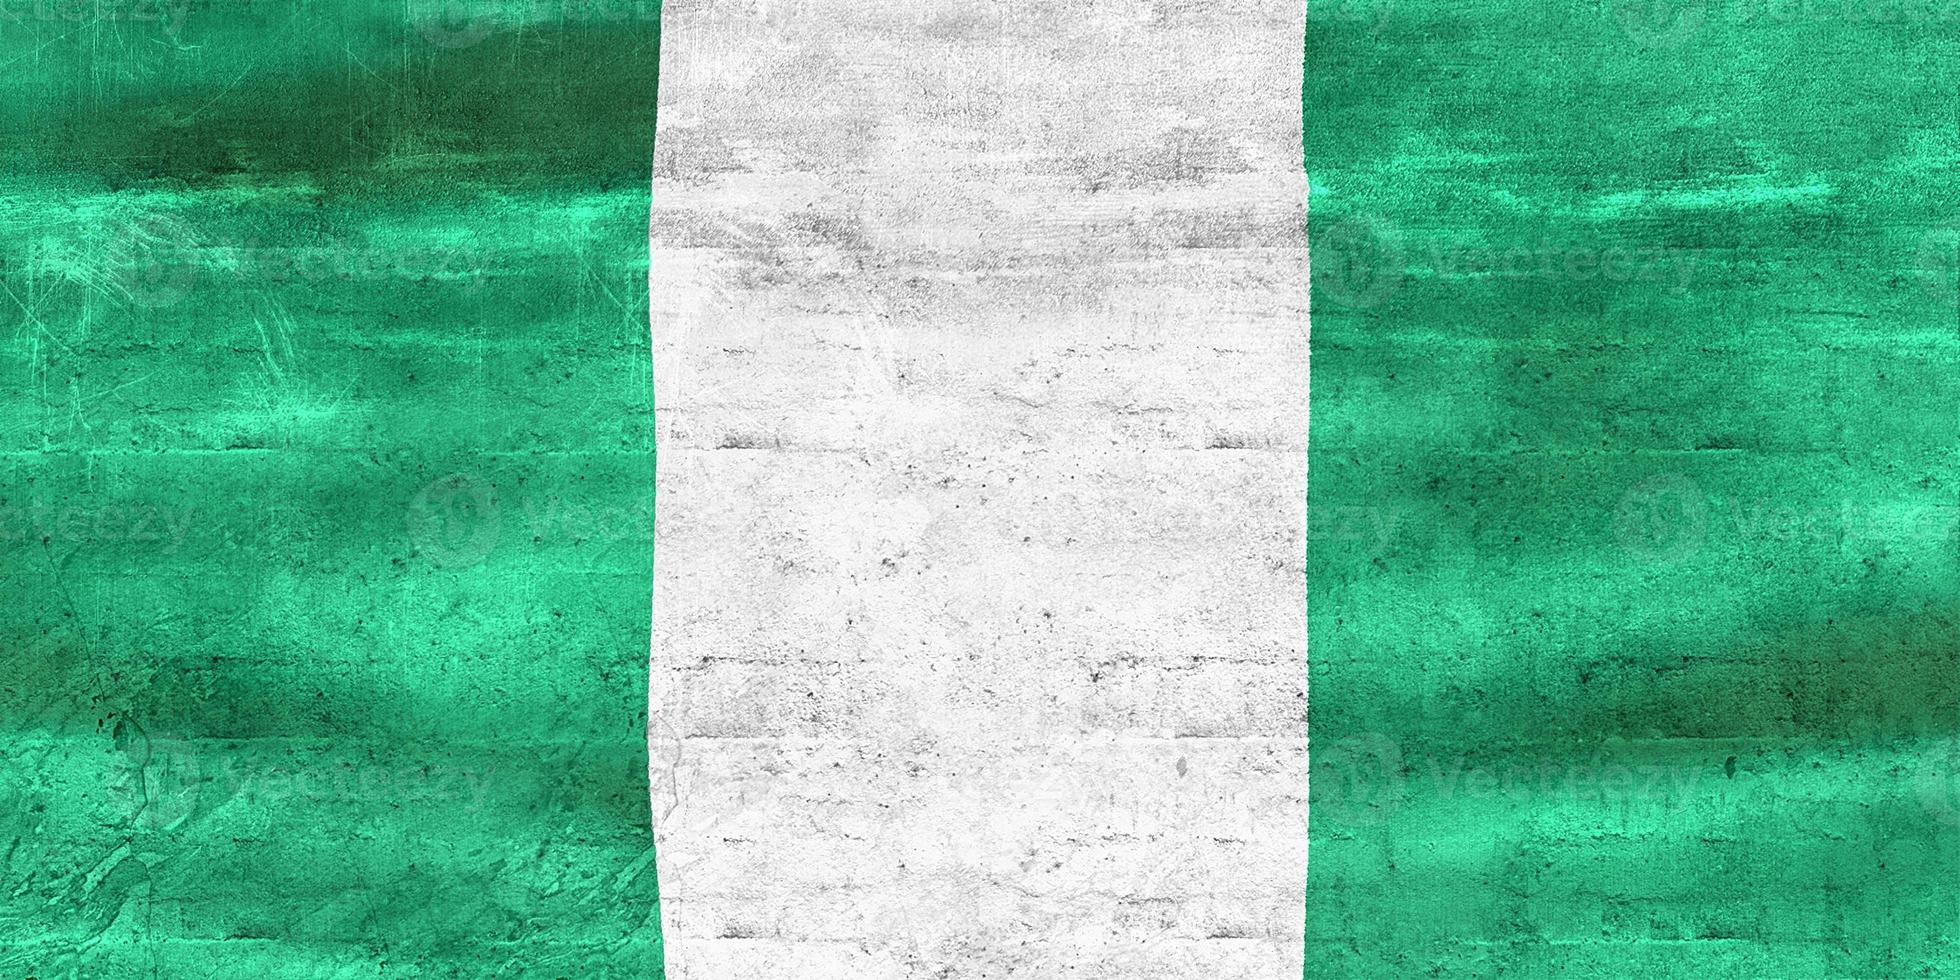 Illustration 3d d'un drapeau nigérian - drapeau en tissu ondulant réaliste photo